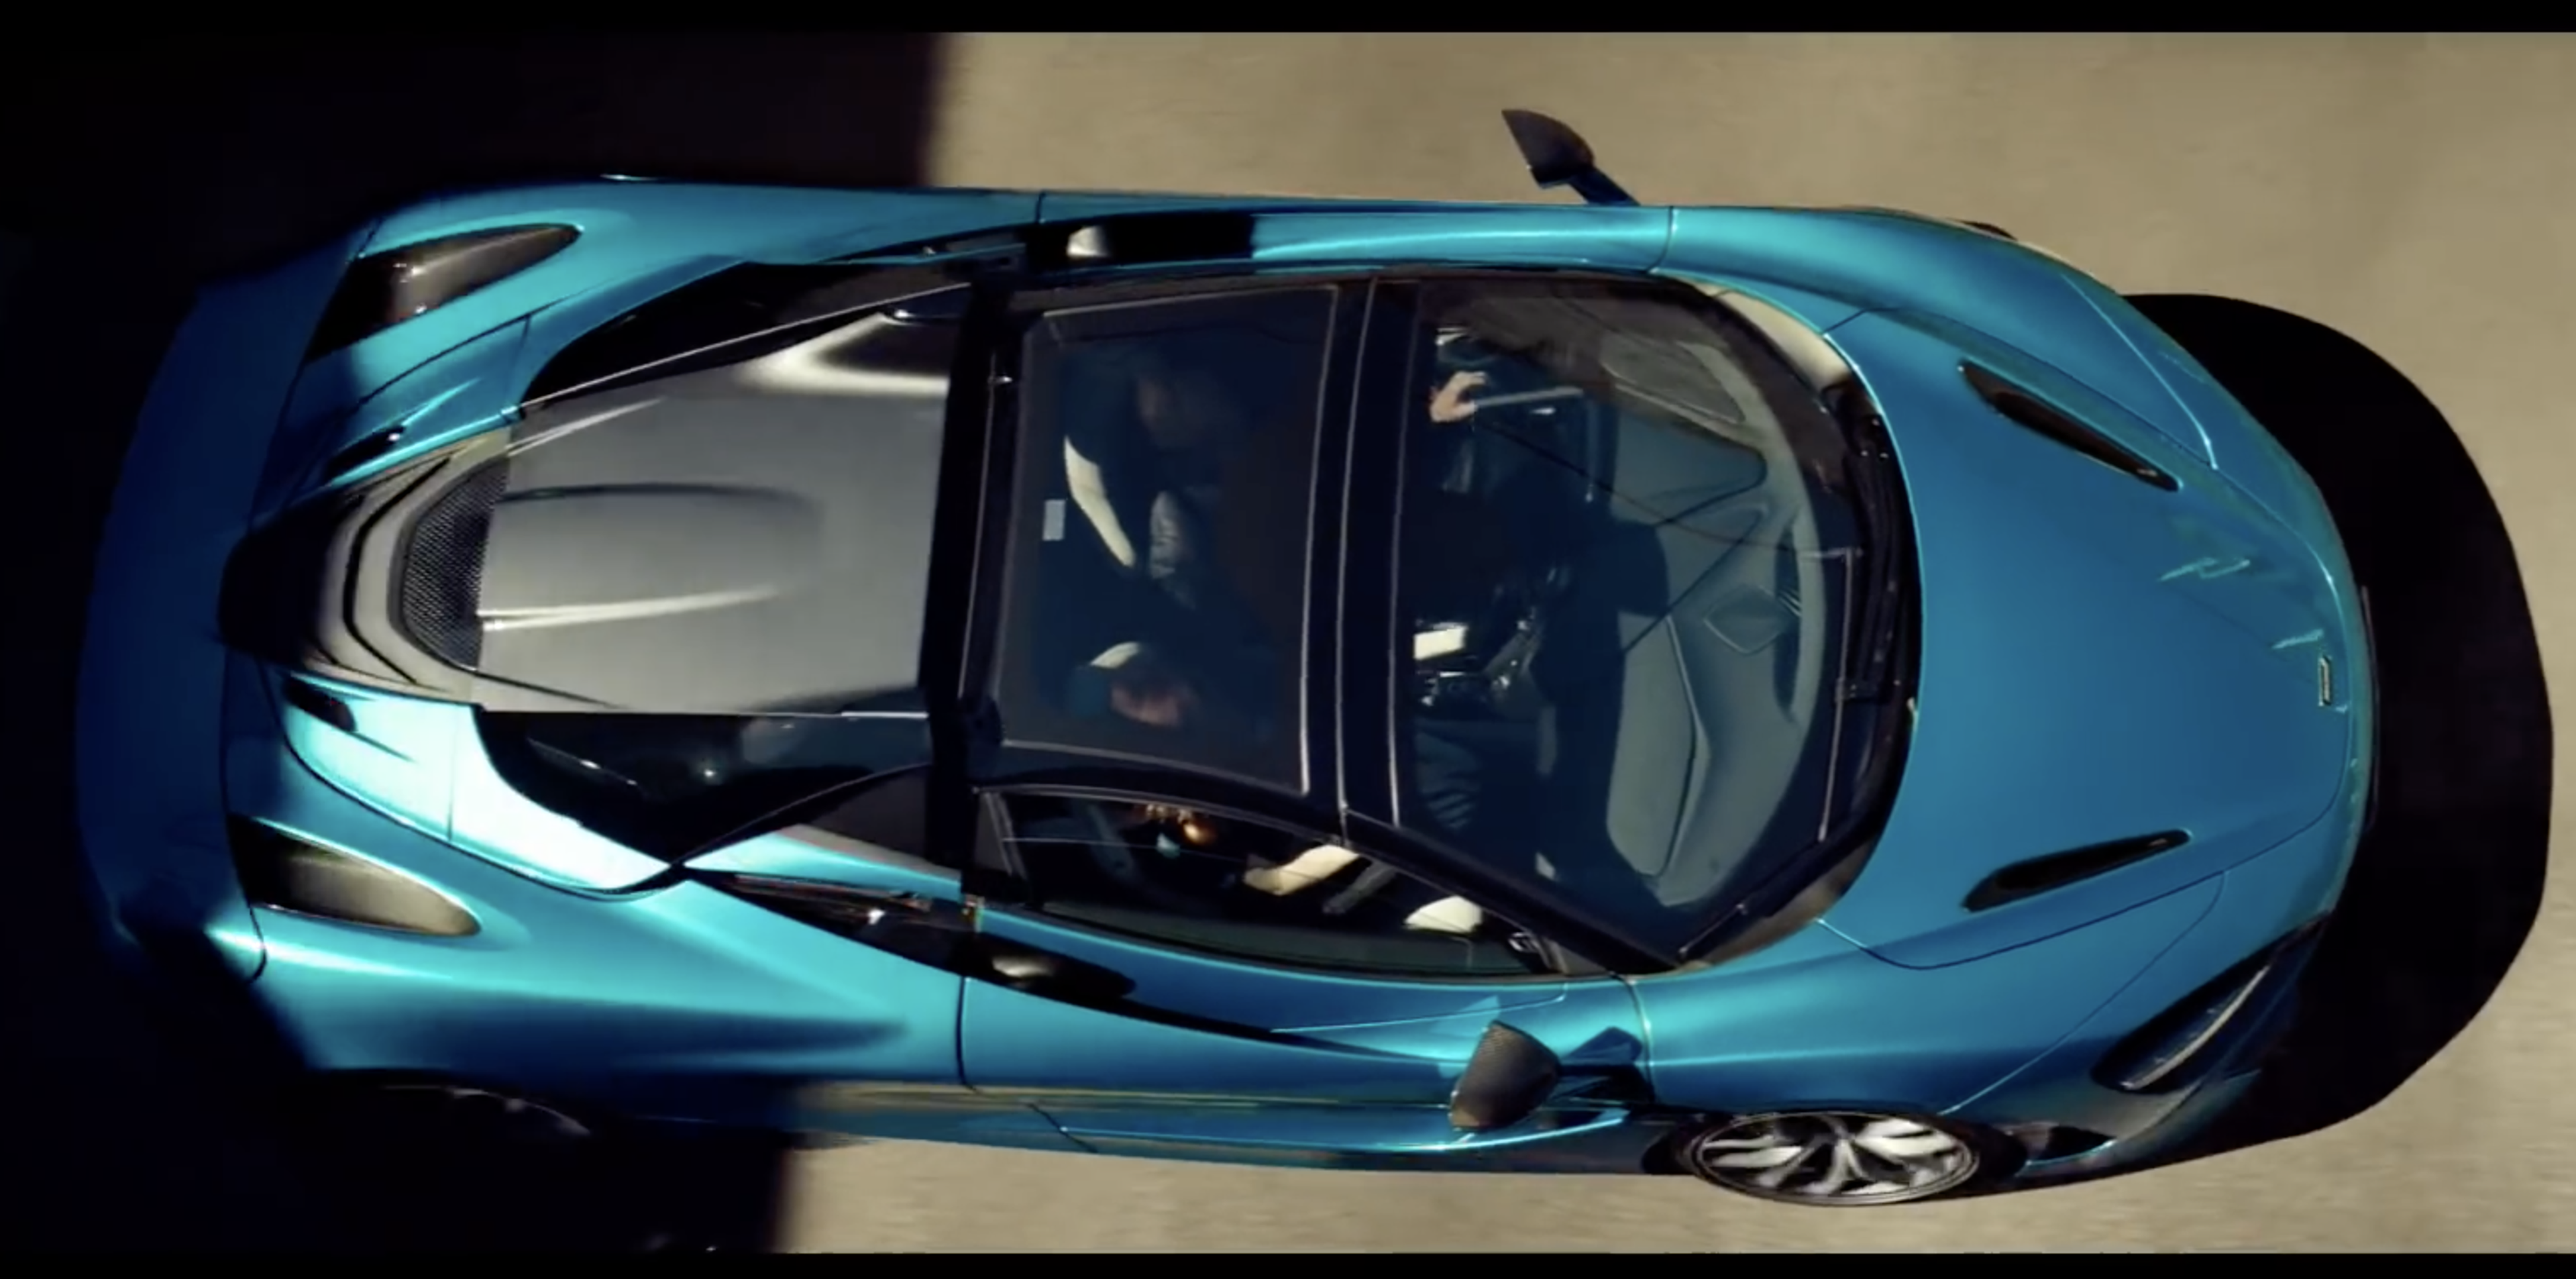 VÍDEO: Así se presenta el McLaren 720S Spider, potencia a cielo abierto